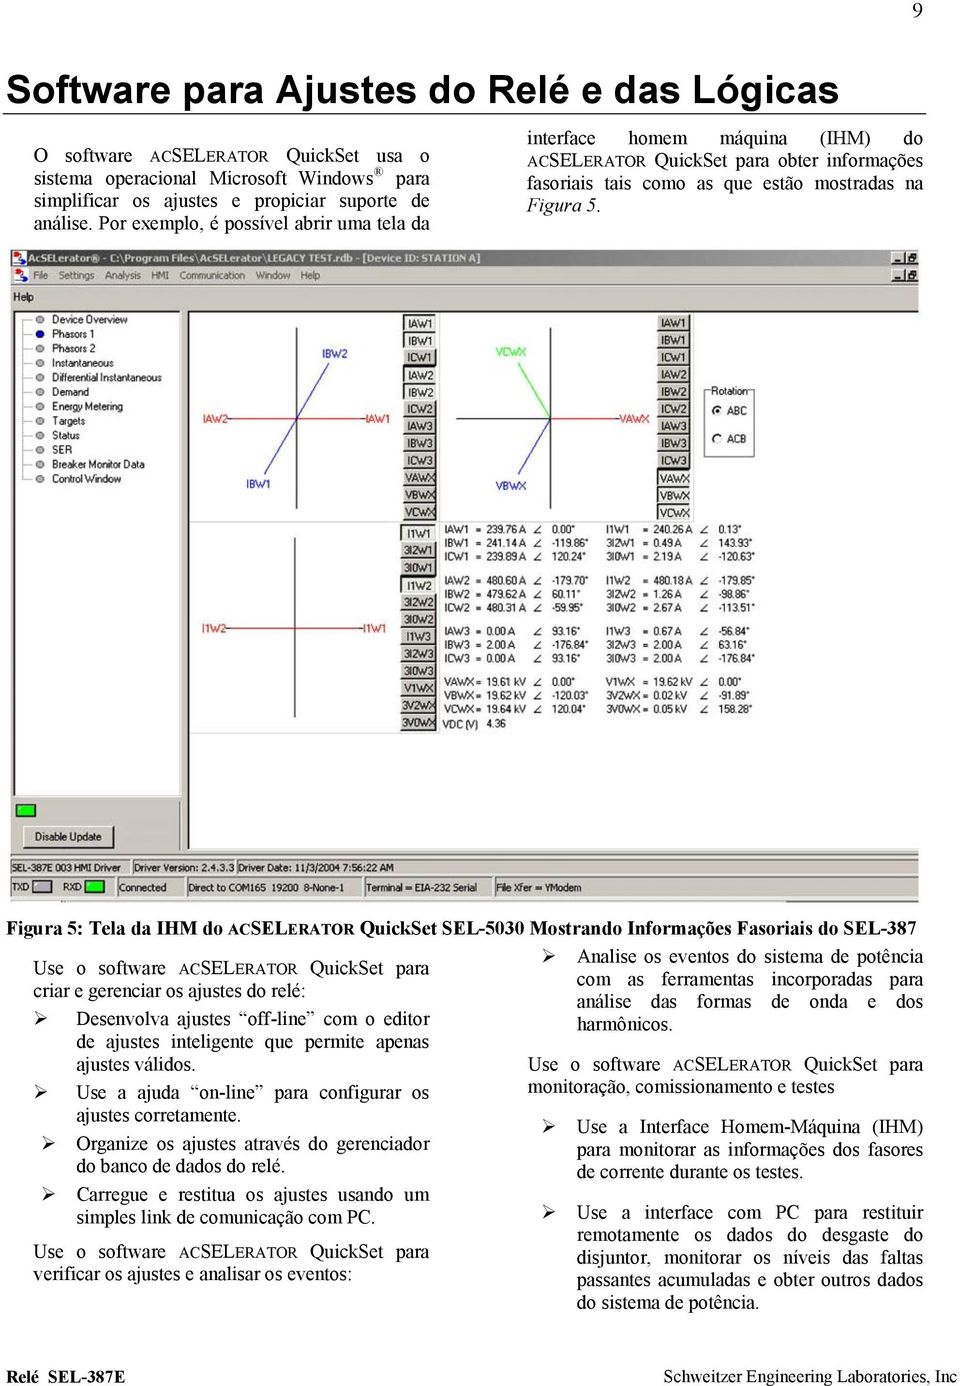 Figura 5: Tela da IHM do ACSELERATOR QuickSet SEL-5030 Mostrando Informações Fasoriais do SEL-387 Use o software ACSELERATOR QuickSet para criar e gerenciar os ajustes do relé: Desenvolva ajustes